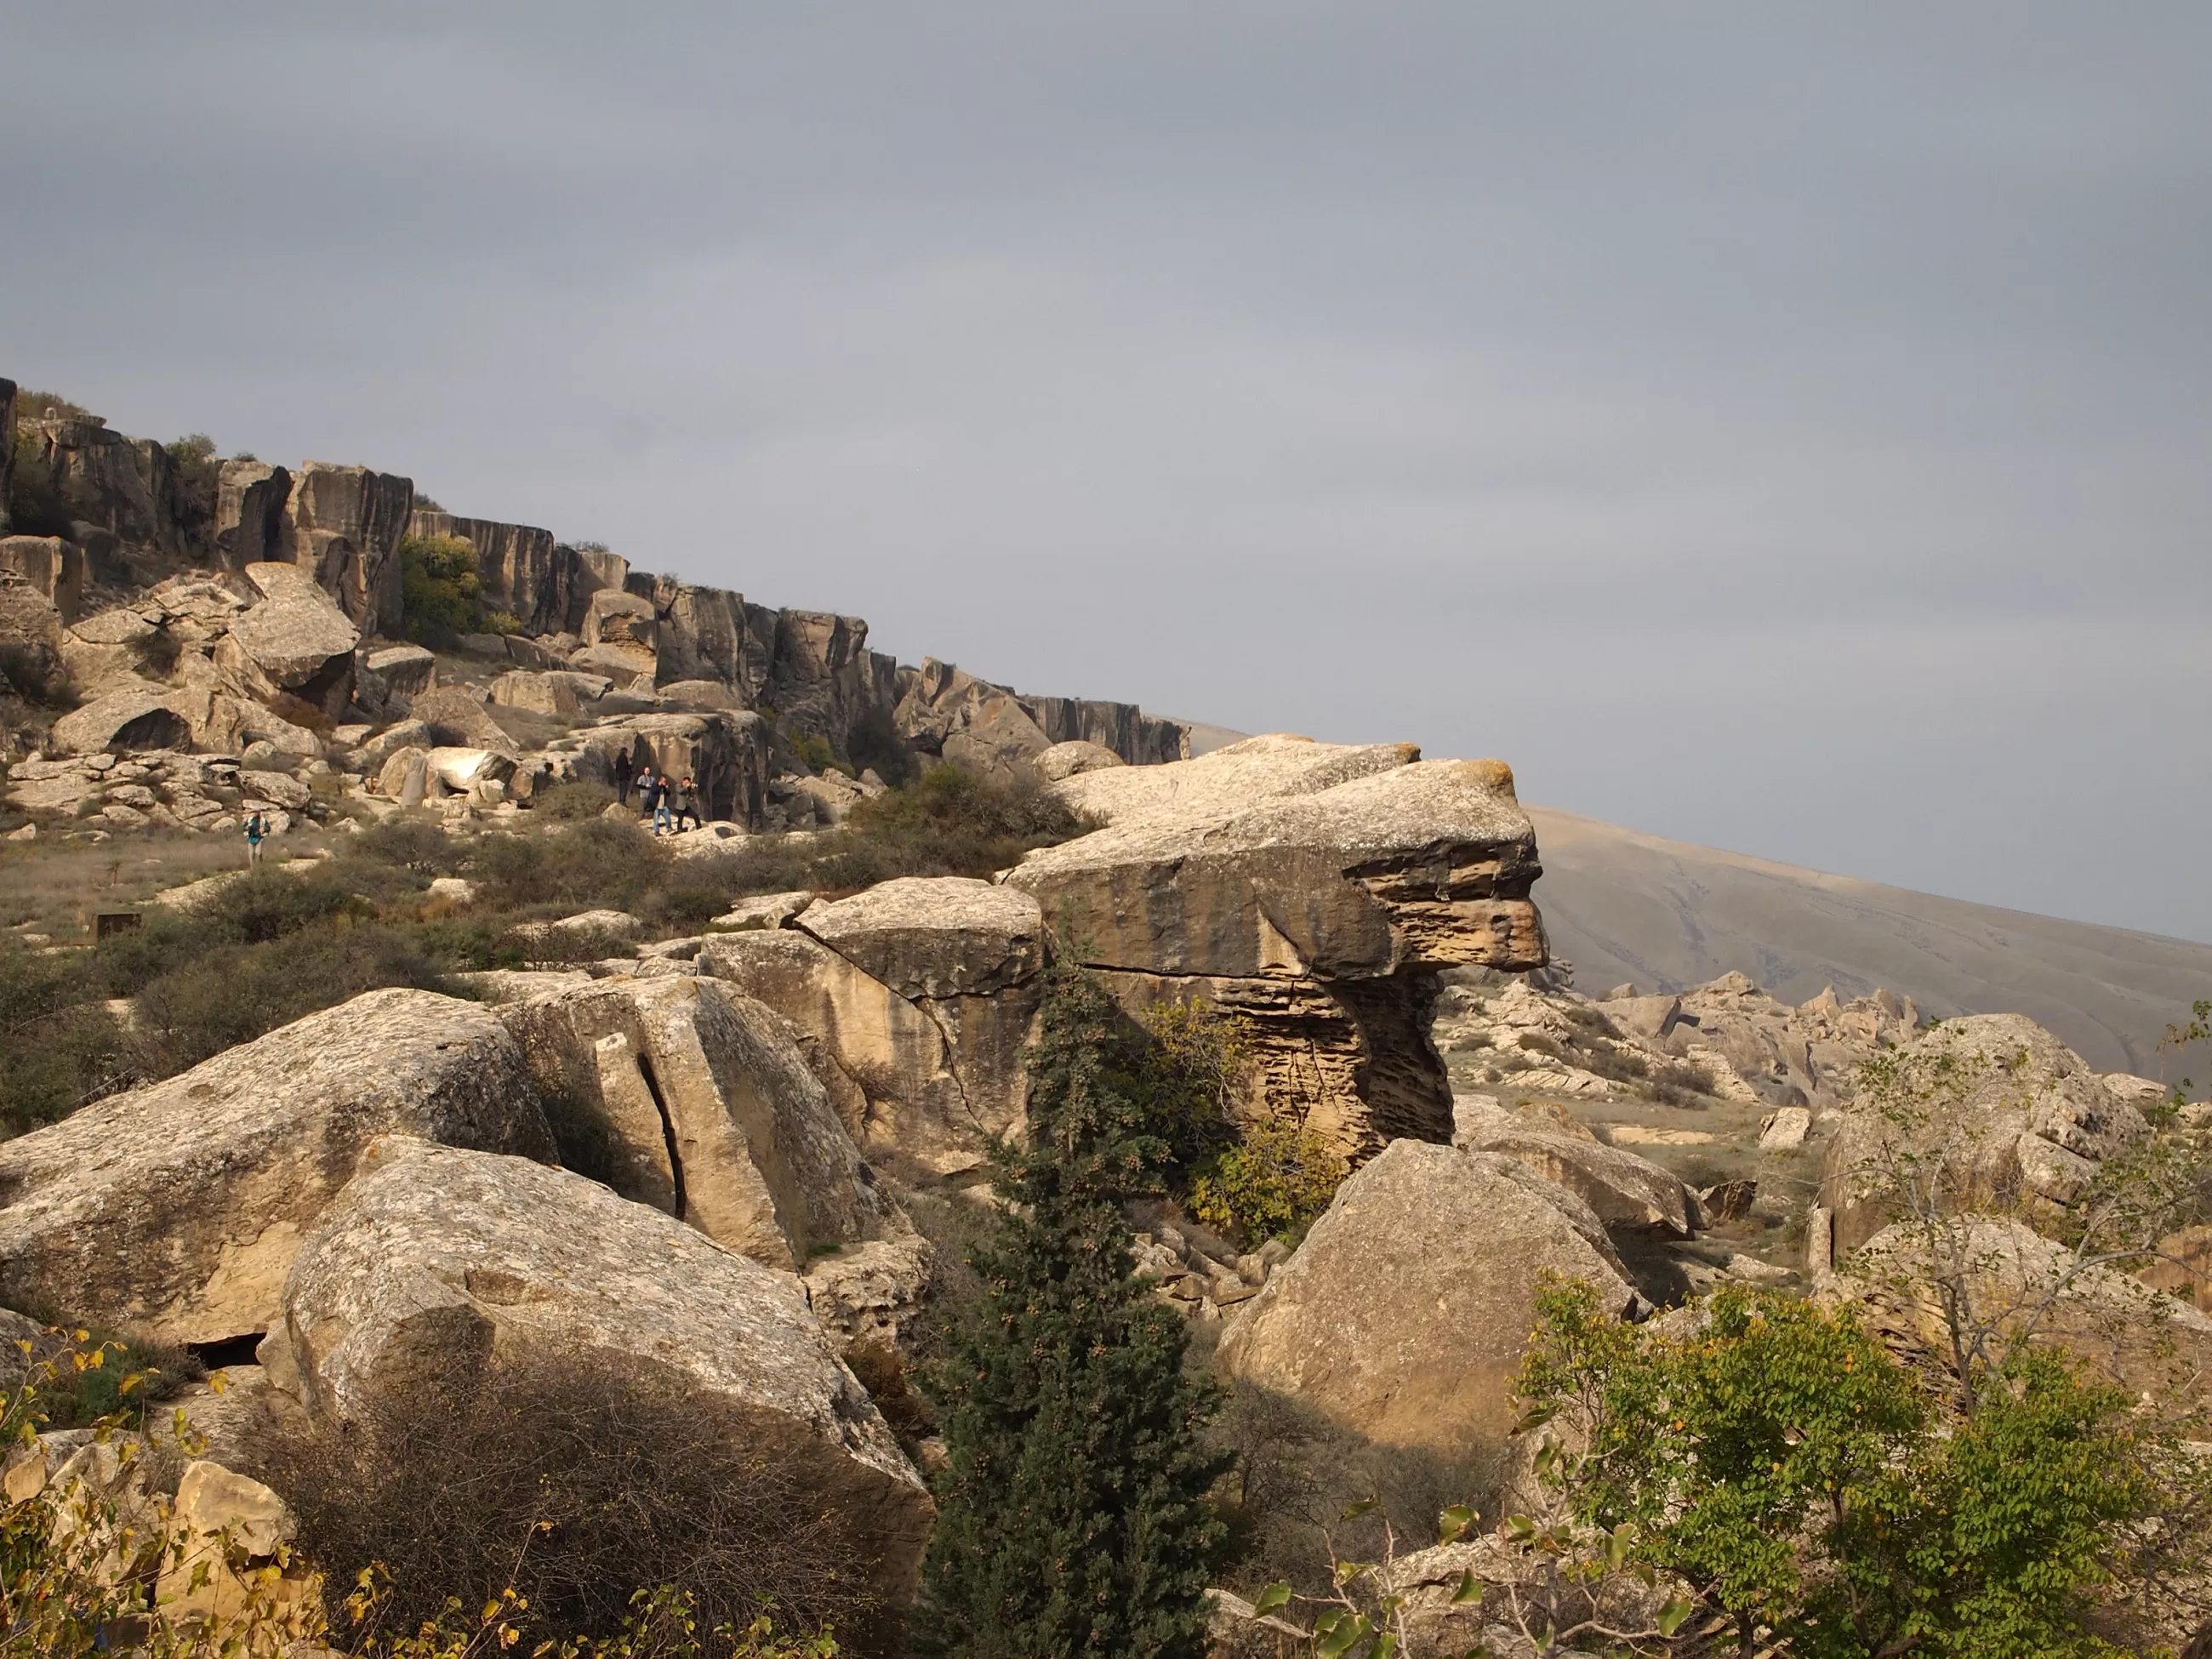 Parc national de Gobustan – Rocher ressemblant au Sphinx